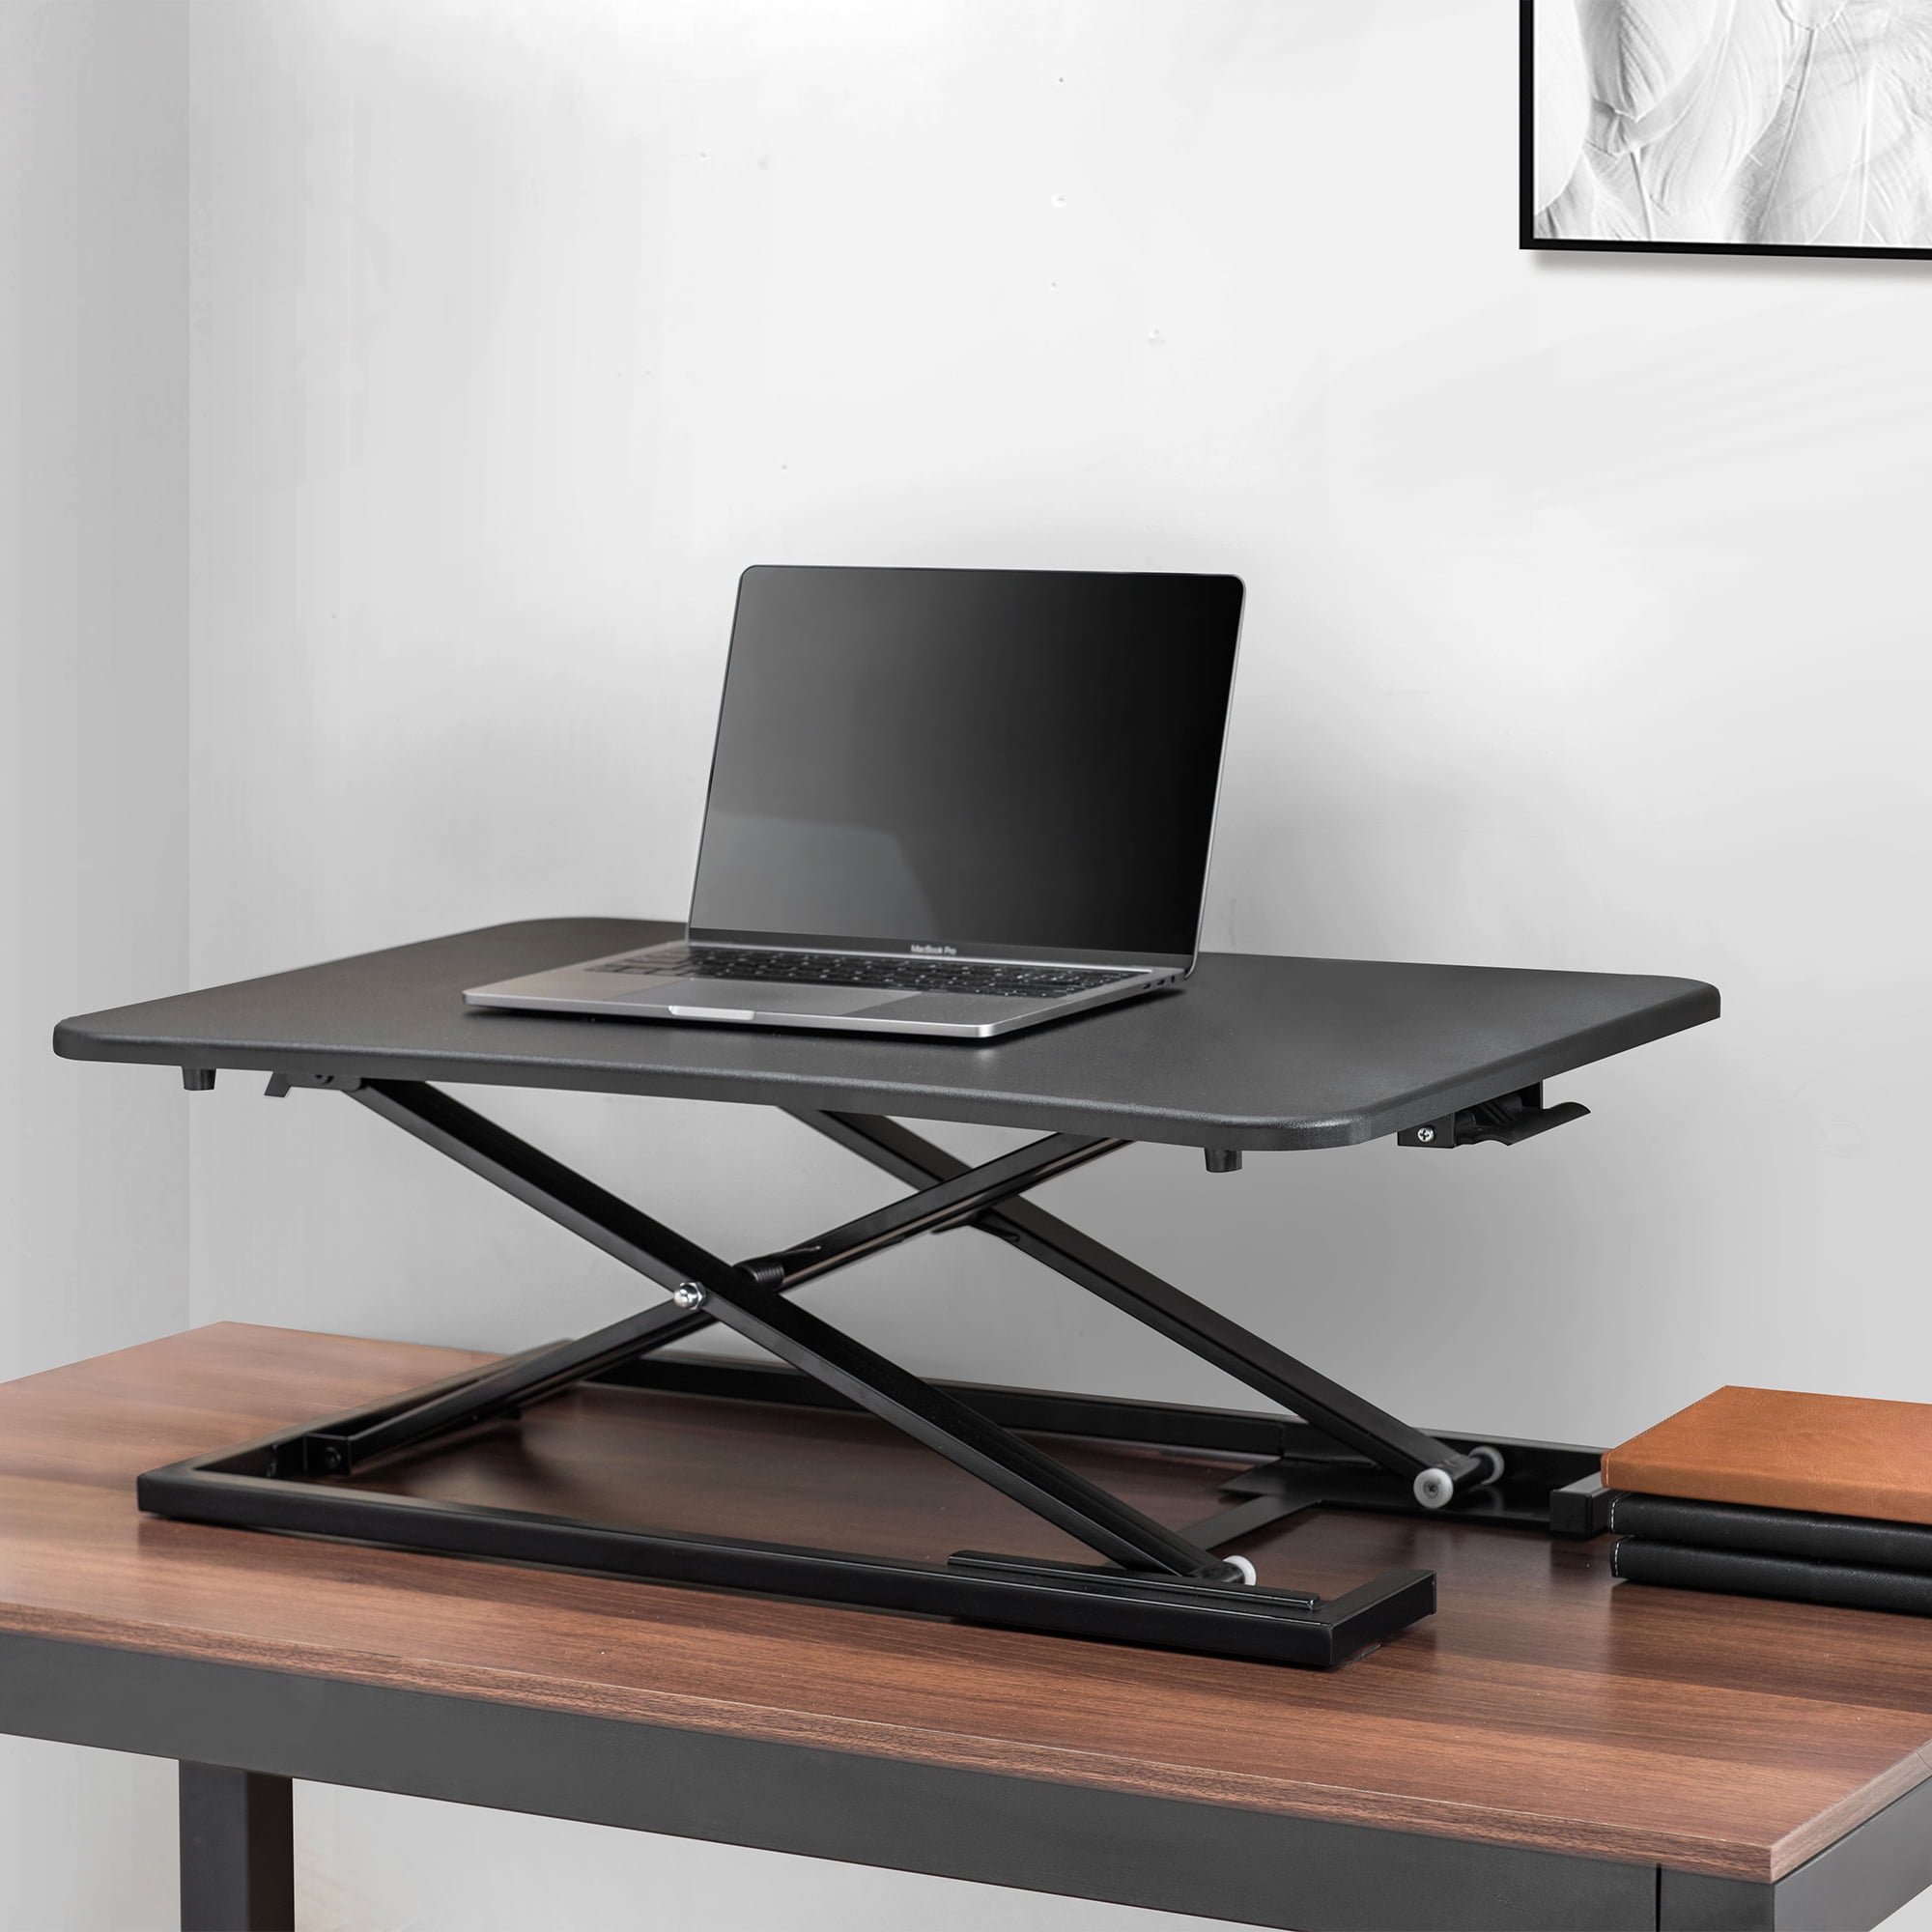 Tukzer Fully Foldable Laptop Stand Riser for Laptop Tablet (Black